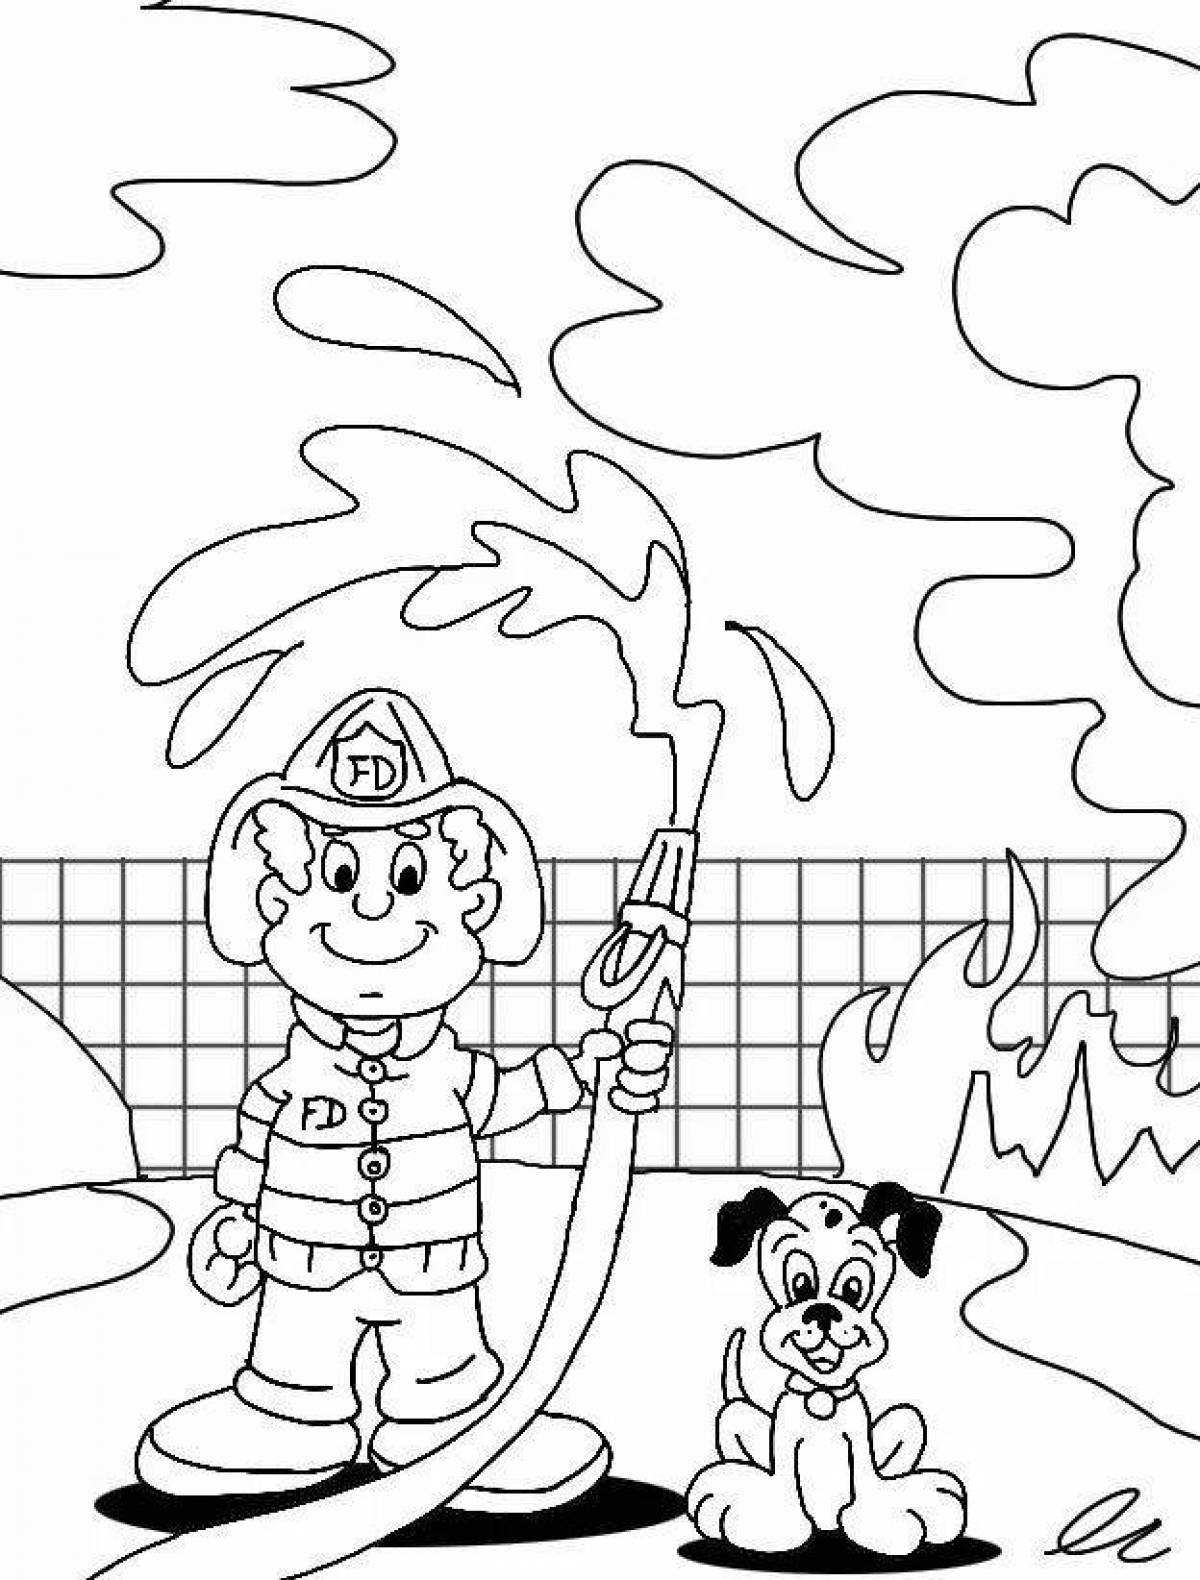 Красочная страница-раскраска «пожарная безопасность» для детей 4-5 лет